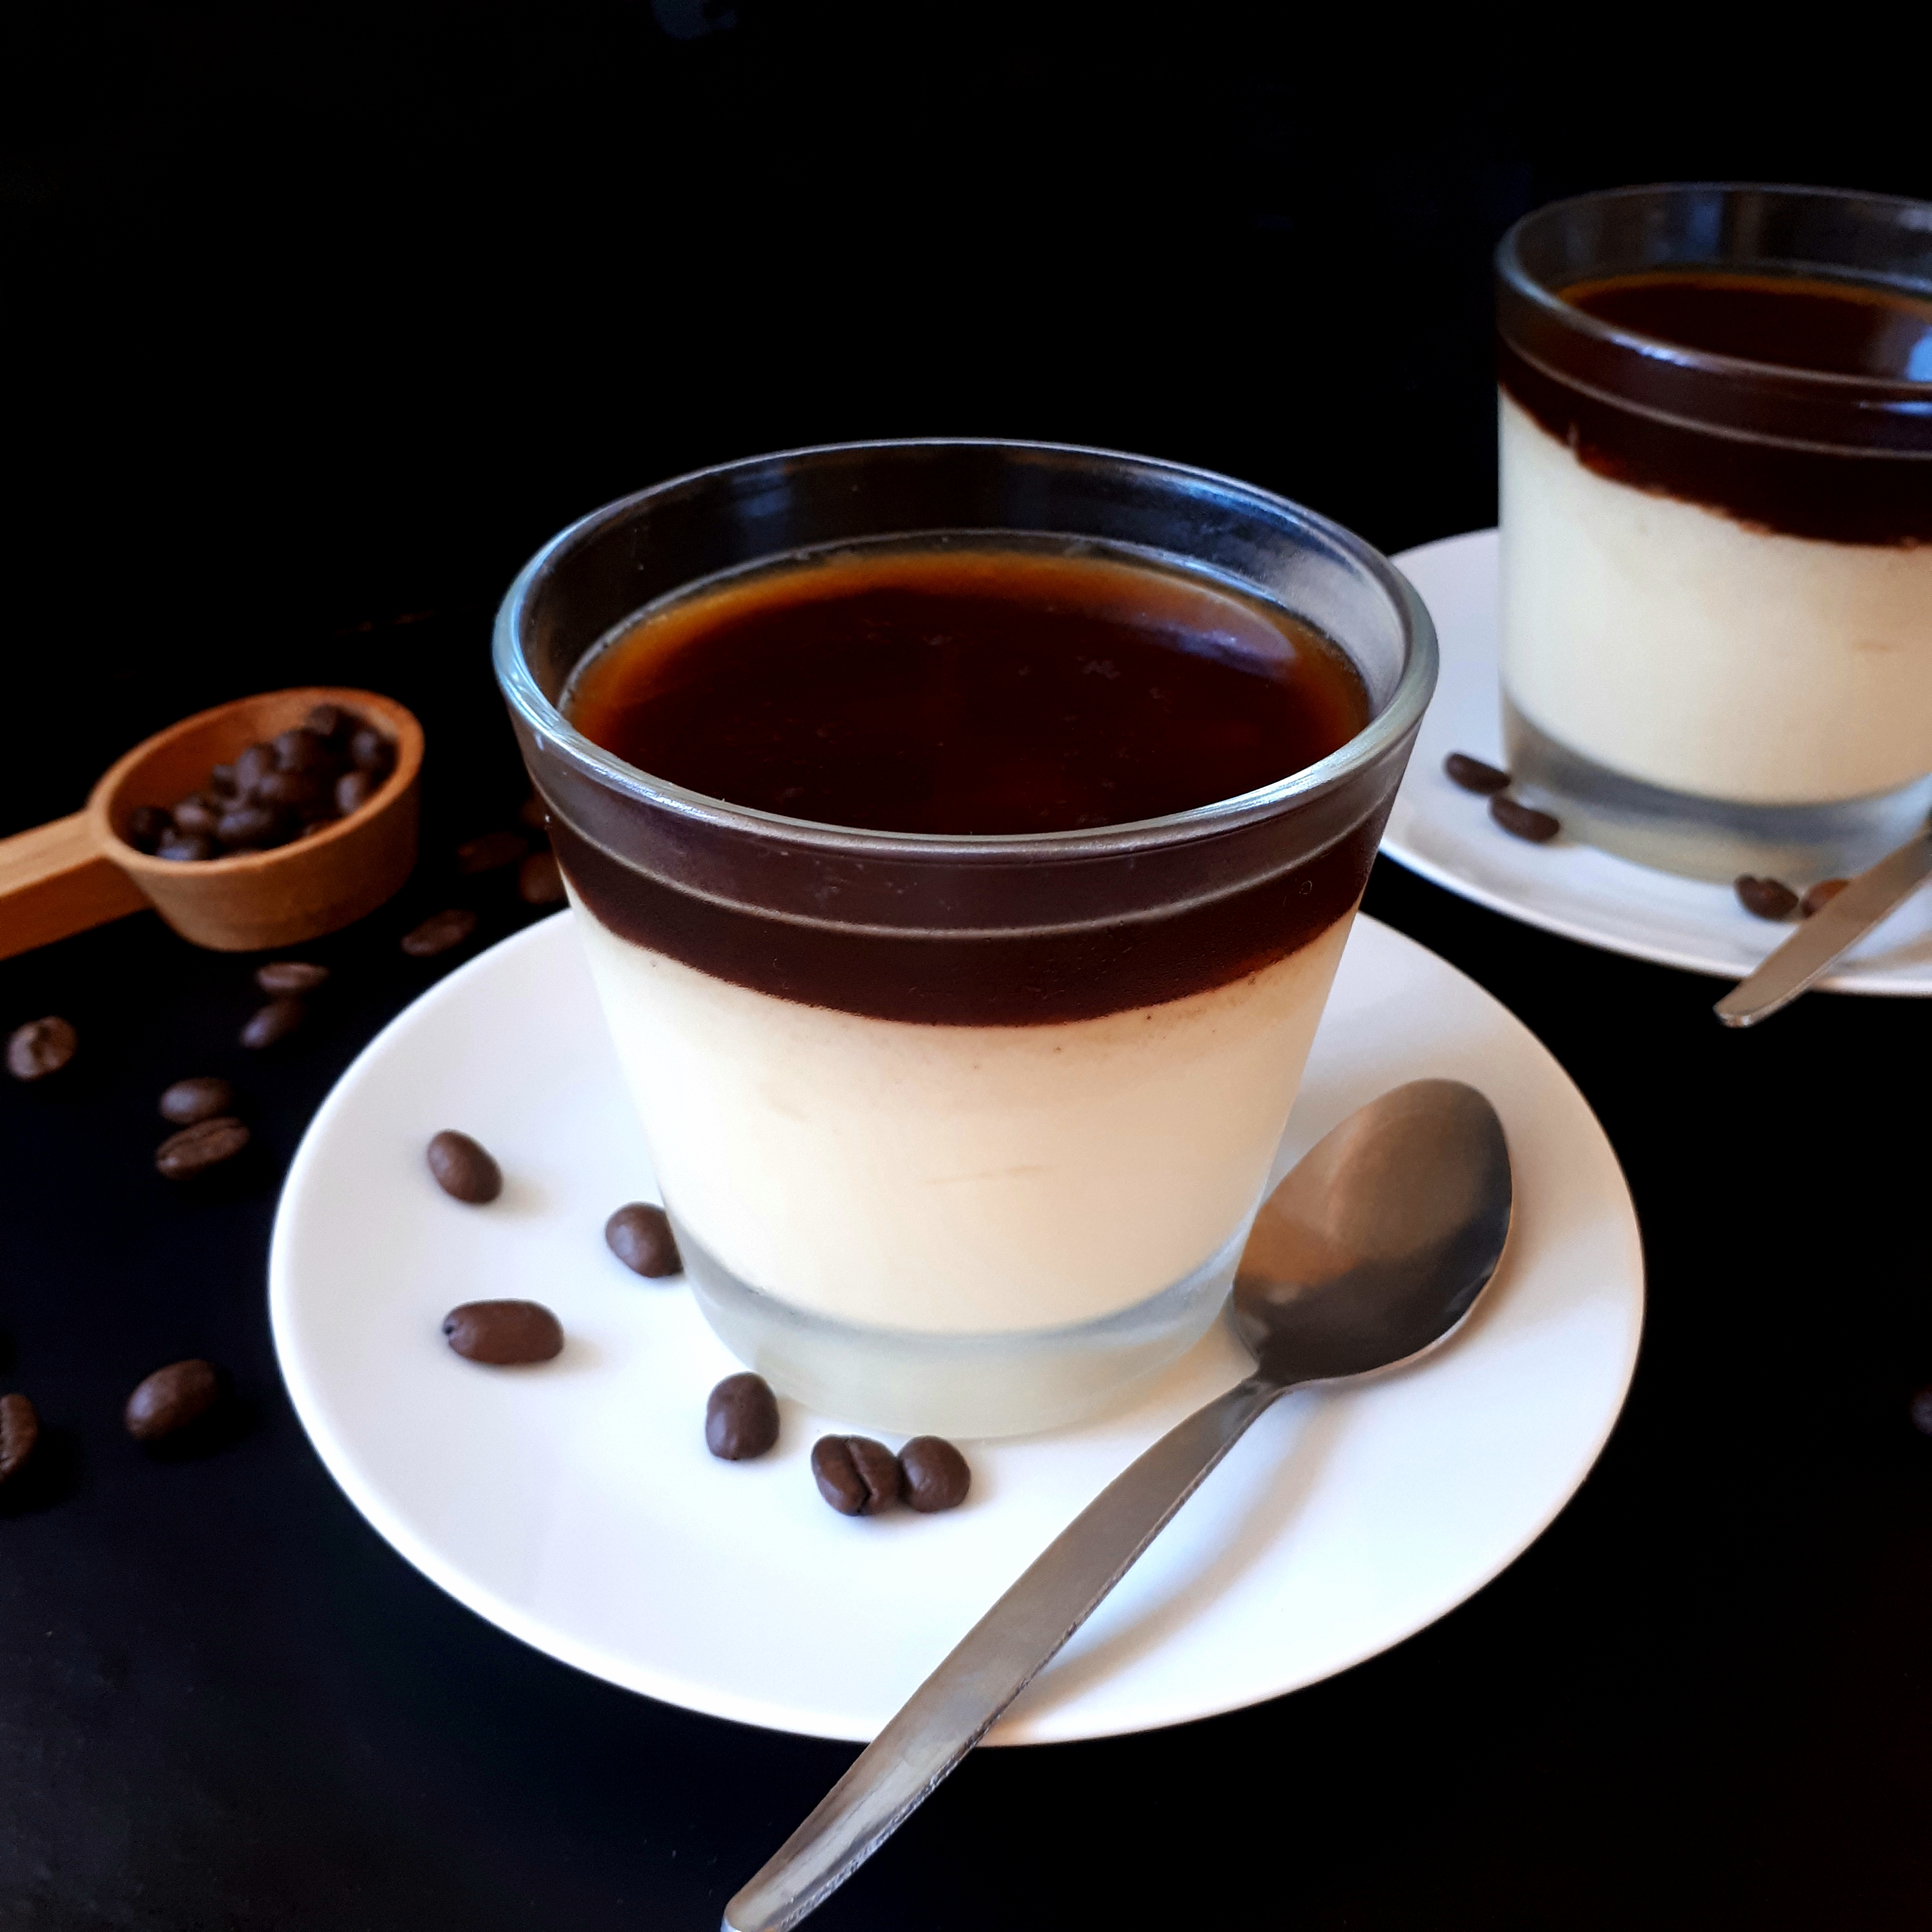 Dva poháre s vanikovým pudingom a vrstvou kávovej želatíny na bielych tanierikoch dve lyžičky na čiernom povrchu v pozadí odmerka na kávu okolo rozsypané kávové zrnká